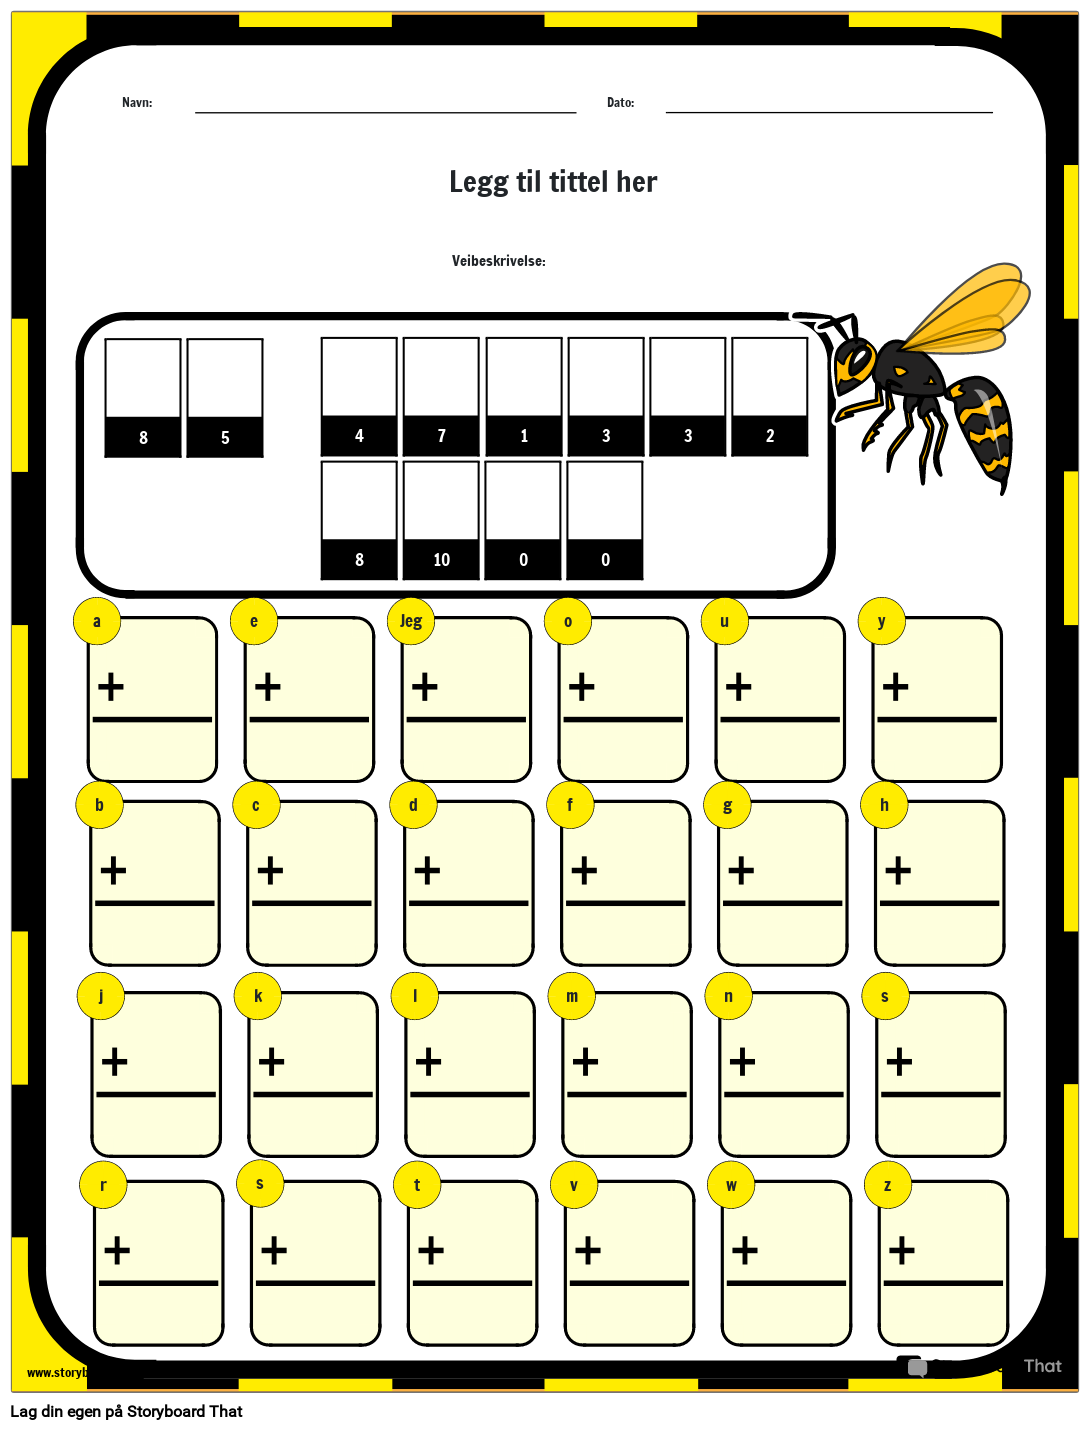 Hvordan går Bees på skolen - Math Riddle Worksheet